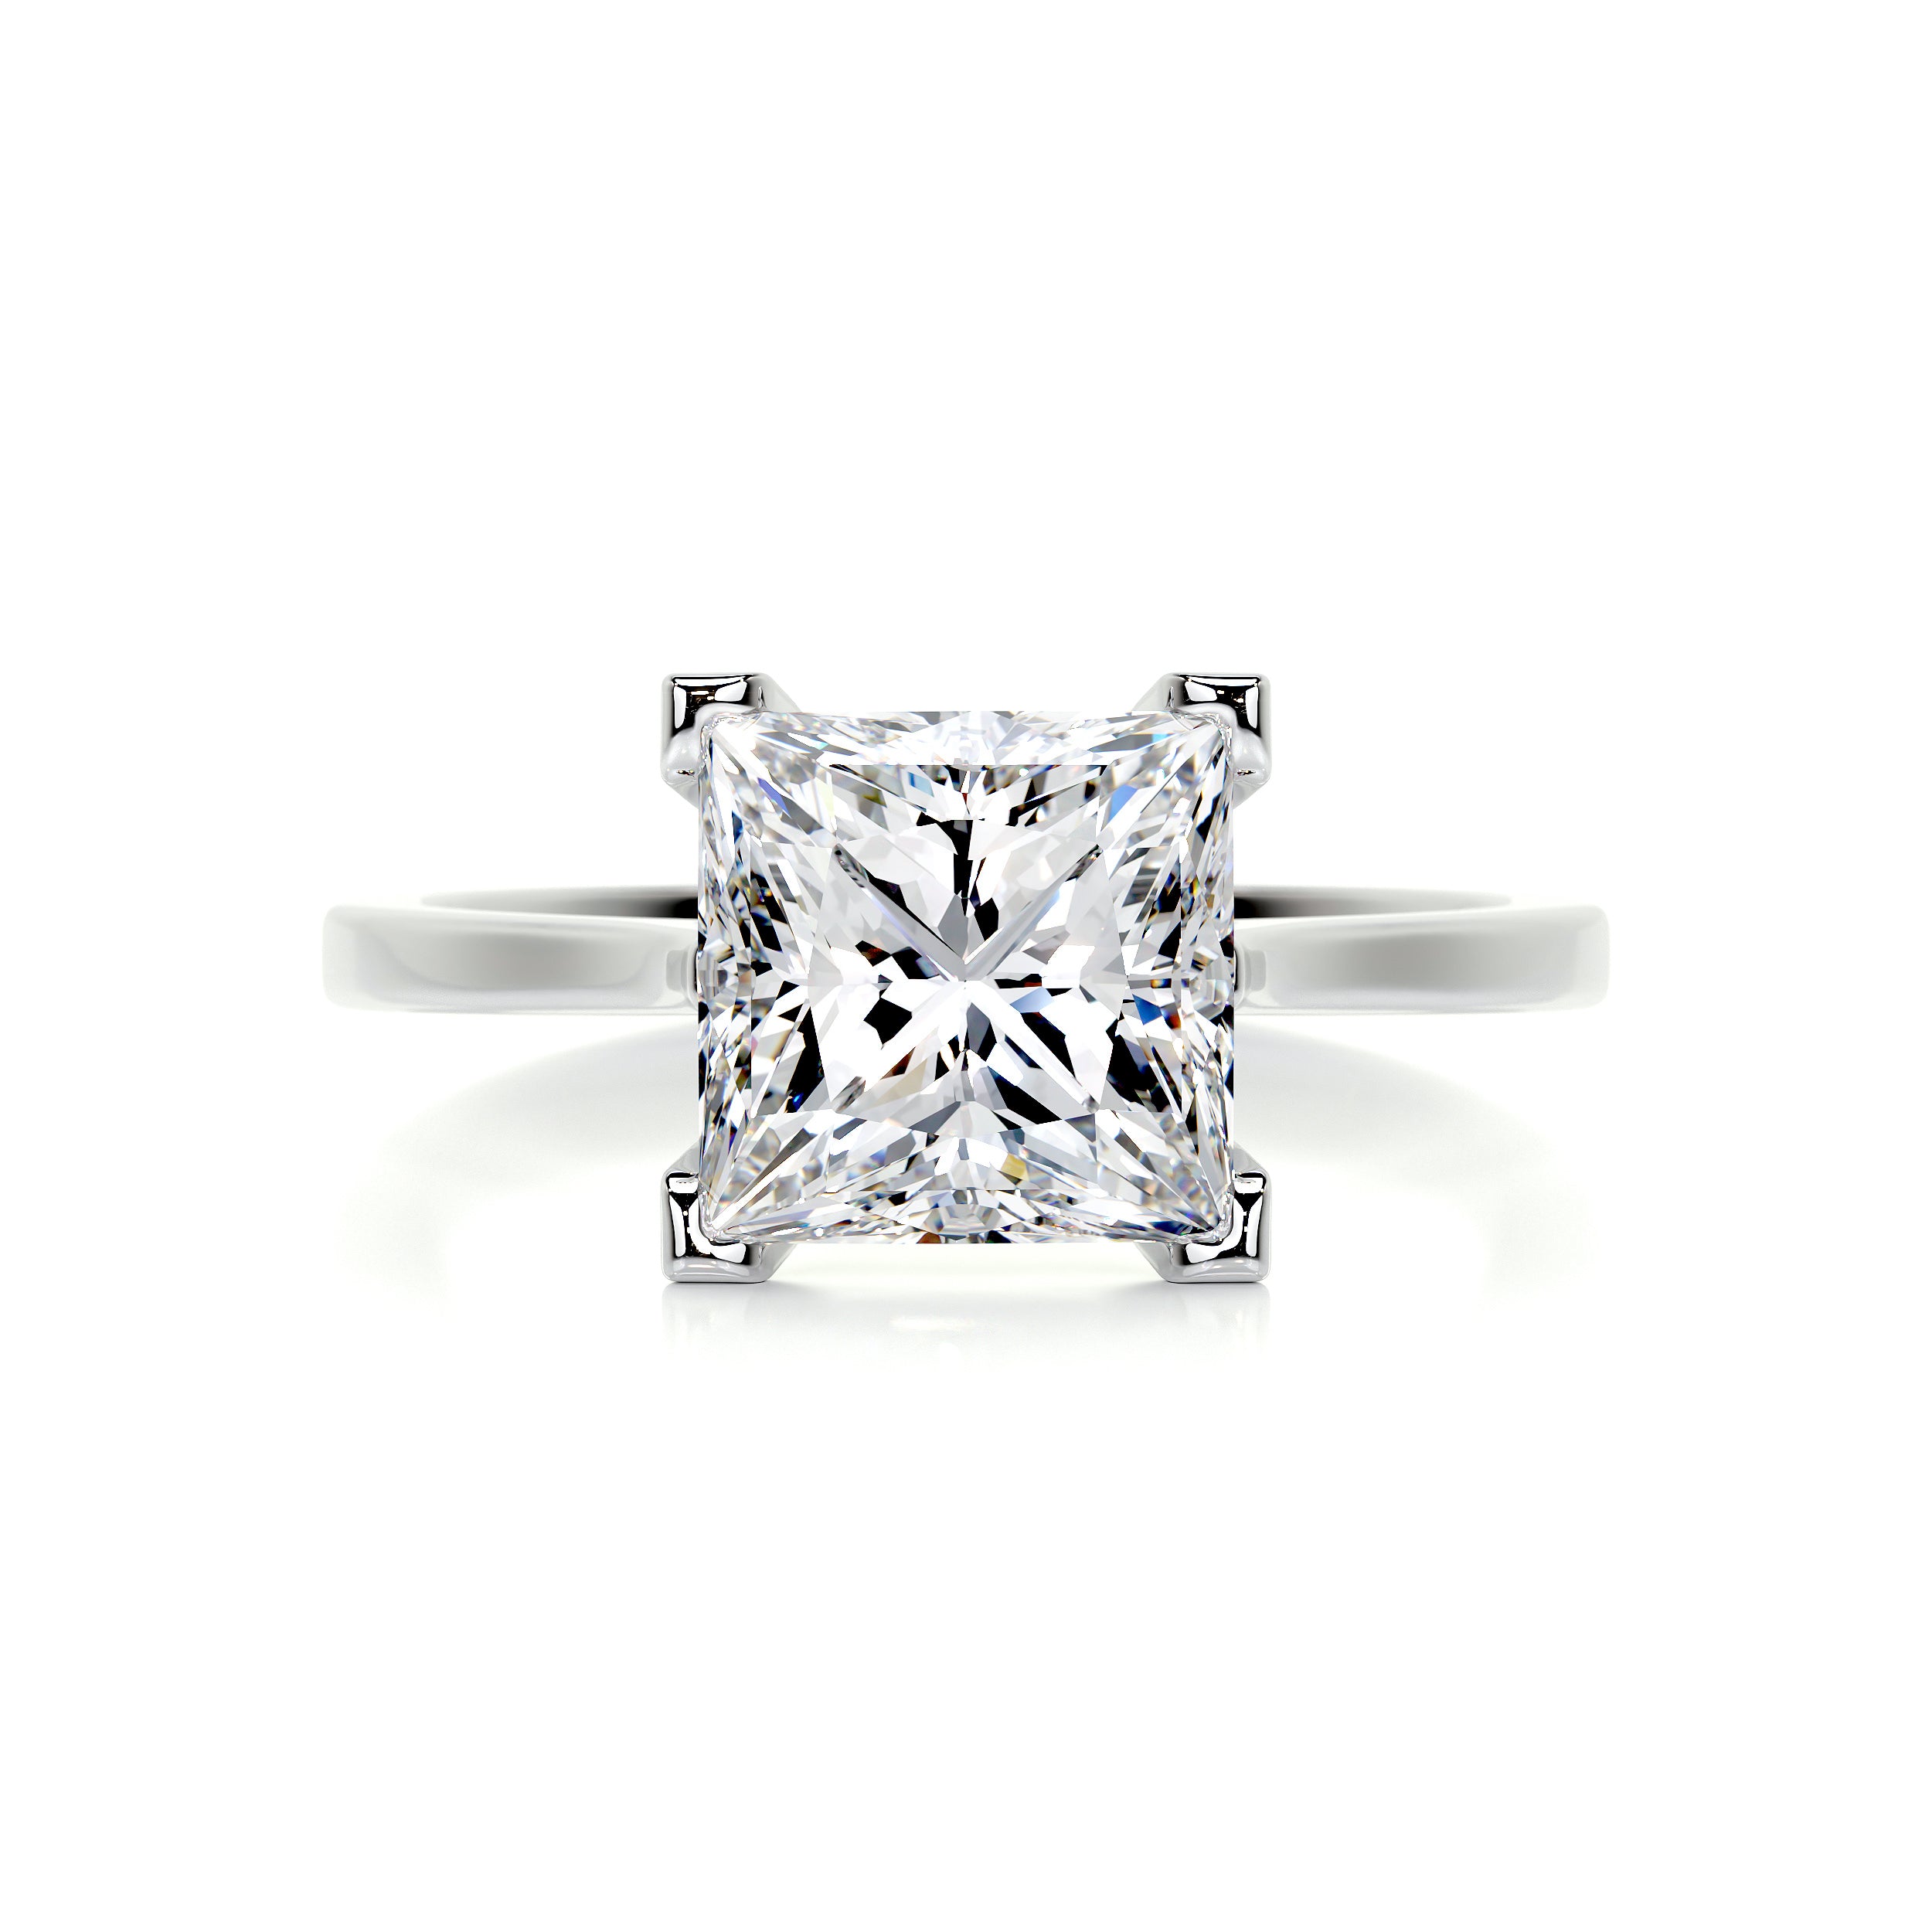 Ella Diamond Engagement Ring   (3 Carat) -18K White Gold